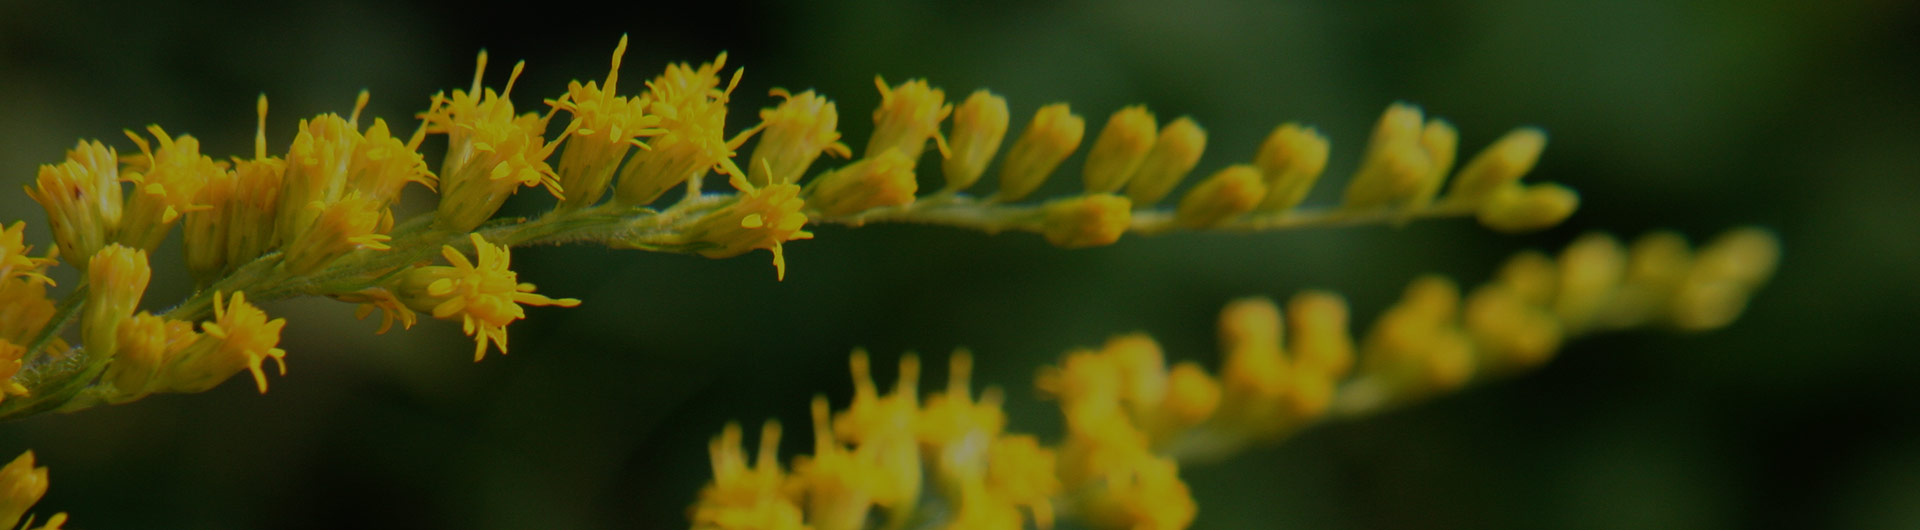 Goldenrod flowers, Nebraska's state flower.